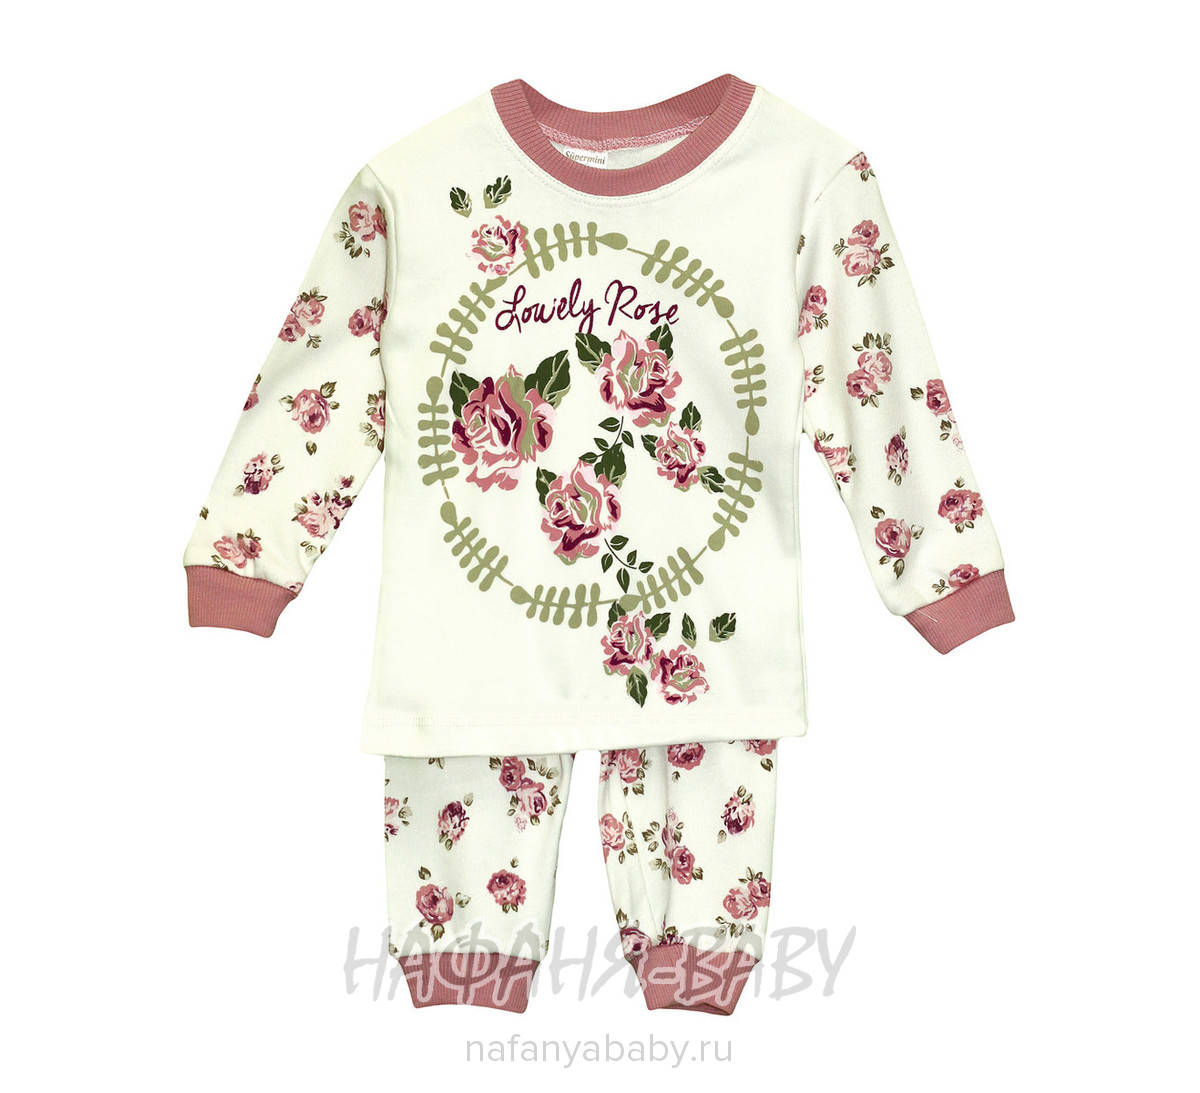 Детская пижама для девочки SUPERMINI, купить в интернет магазине Нафаня. арт: 55525.